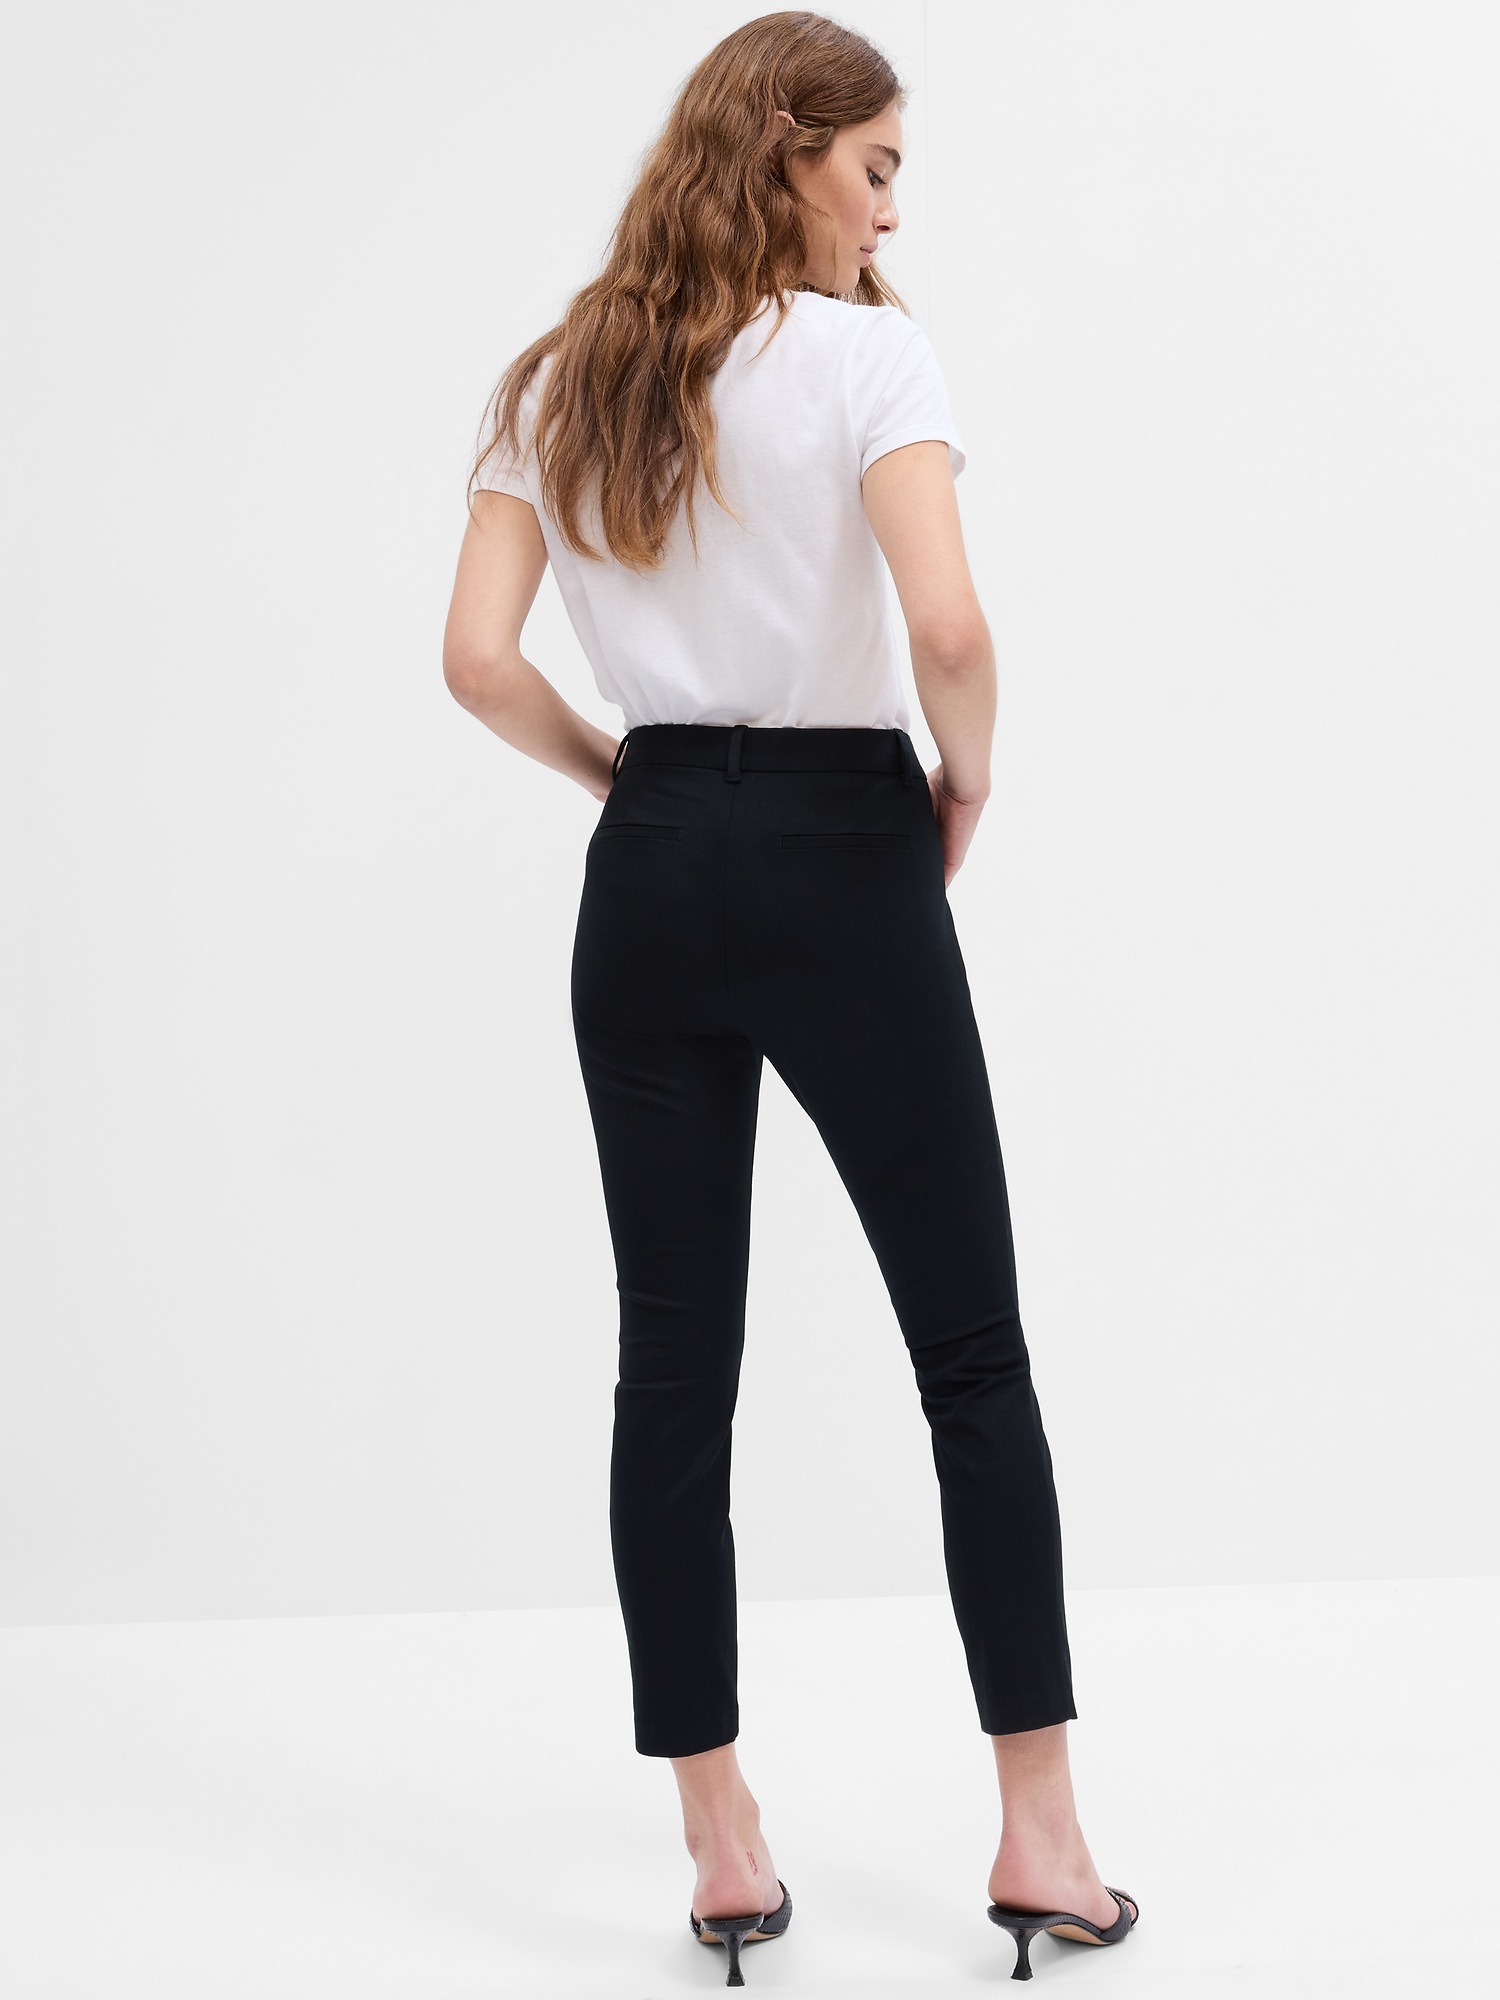 Ponte Jegging Pants for Women in Black | 611-BLACK – Glik's